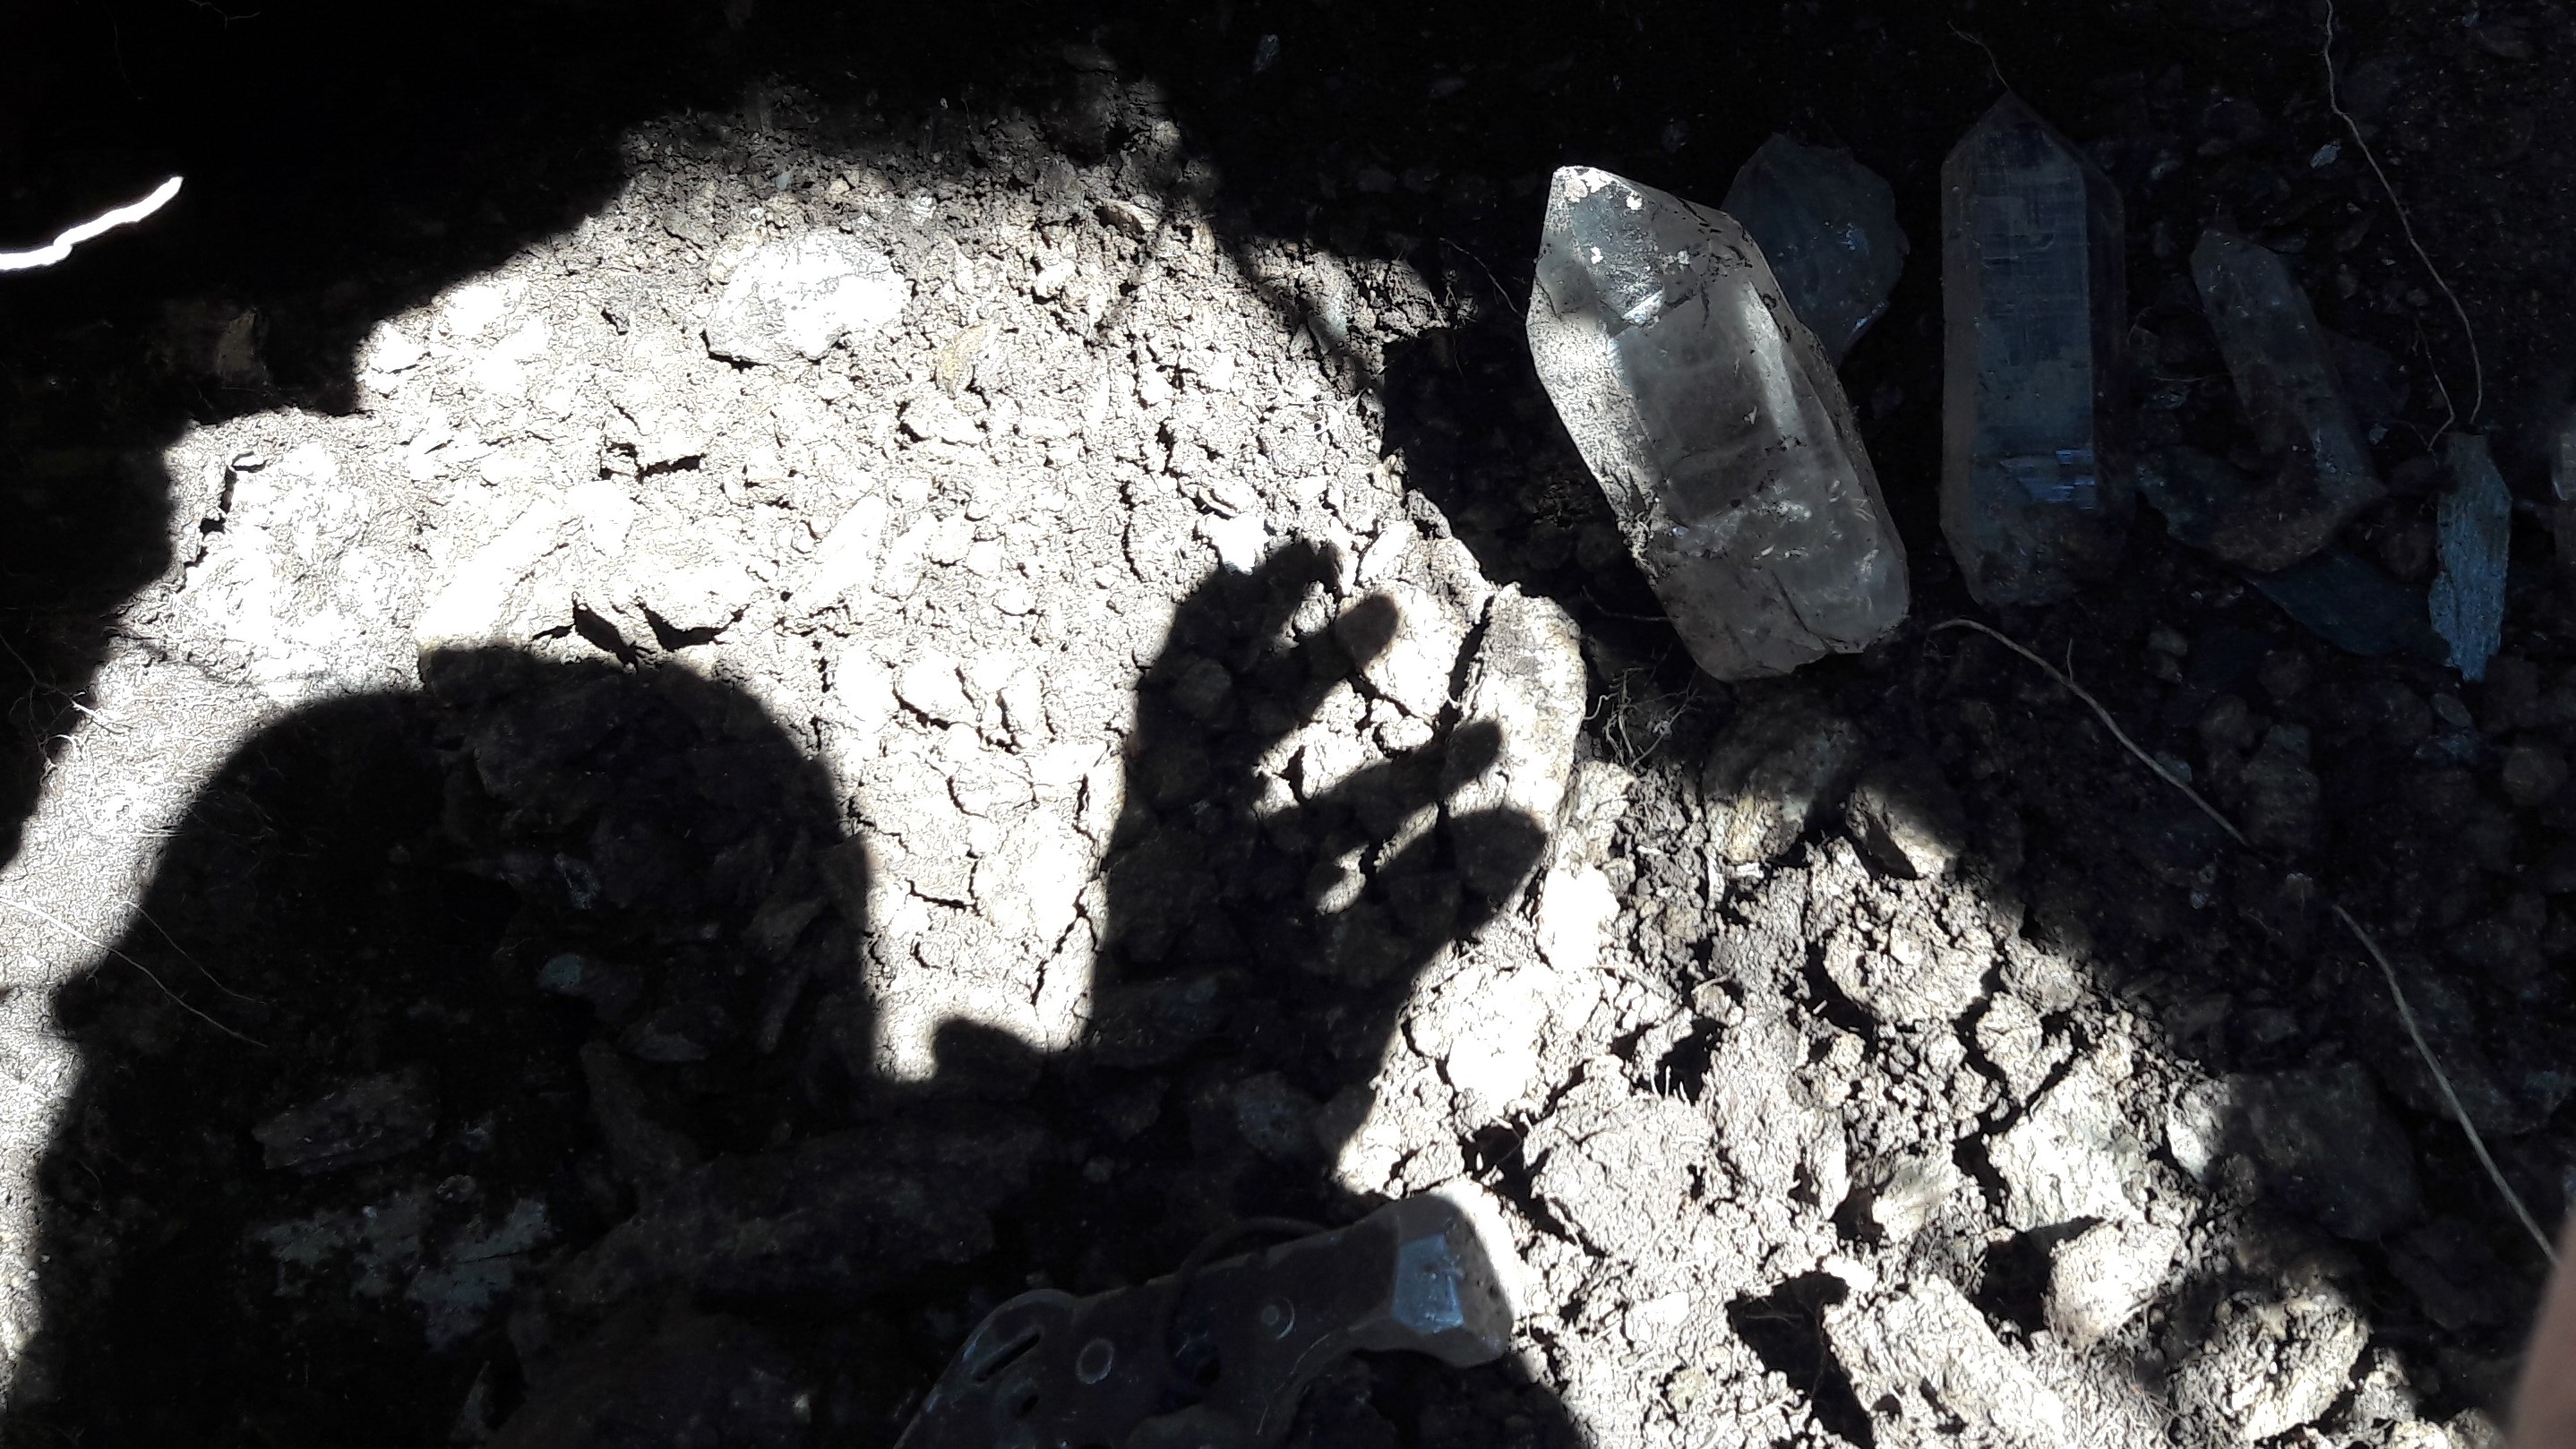 Wunderschöne Kristall Kluft vom Strahler Schmidt in den Walliser Bergen